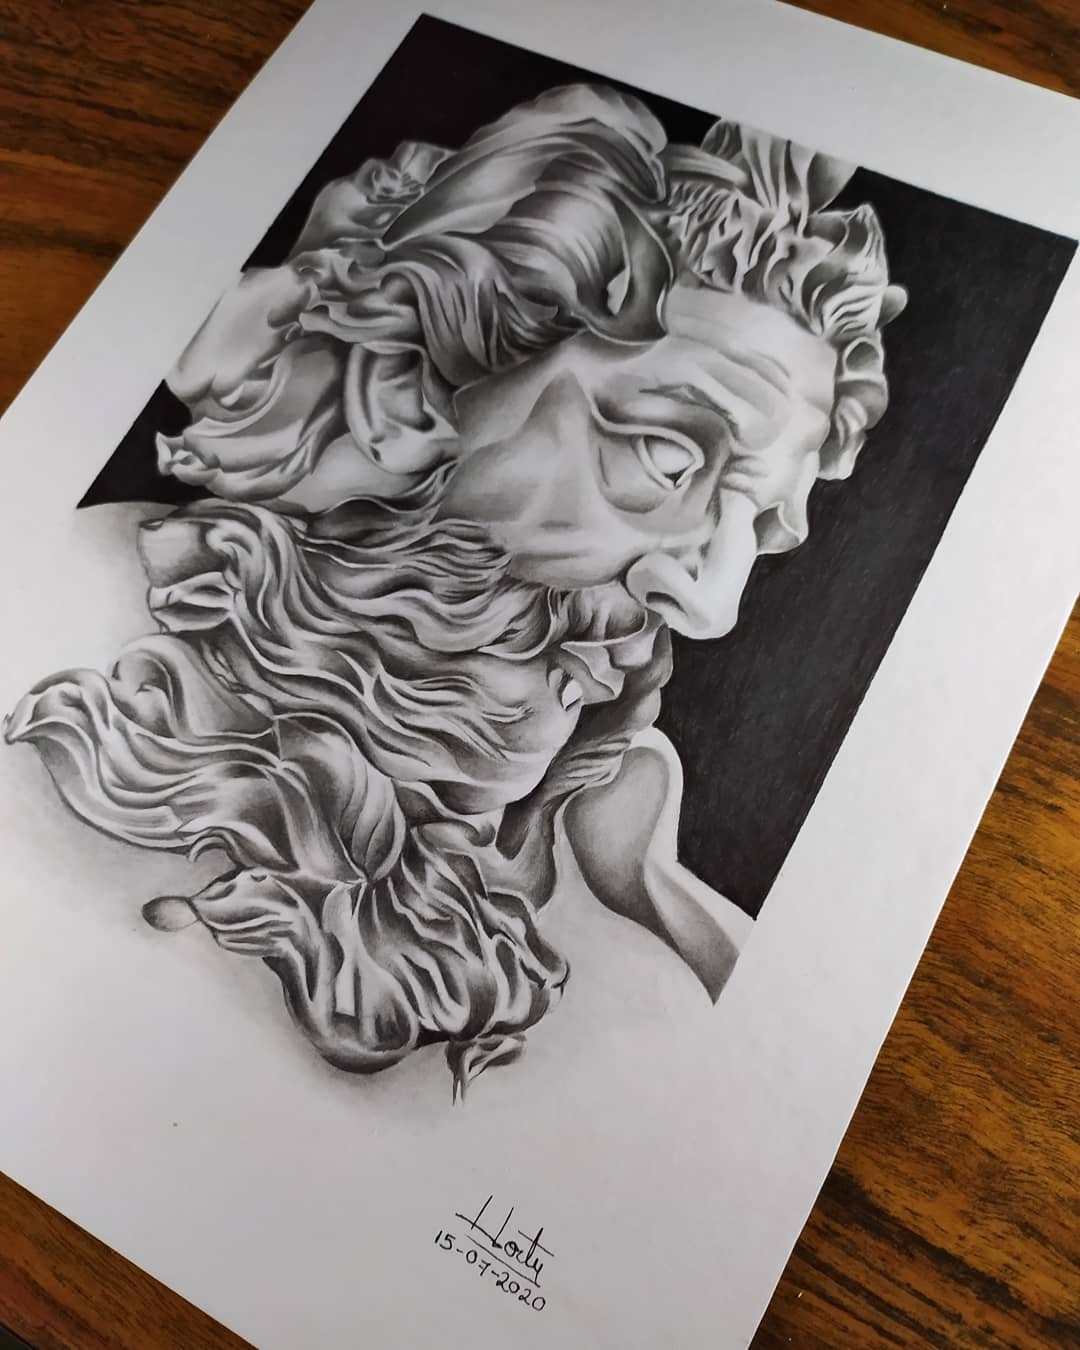 Dibujando al Rey de los Dioses Zeus / Drawing the King of the Gods Zeus |  PeakD